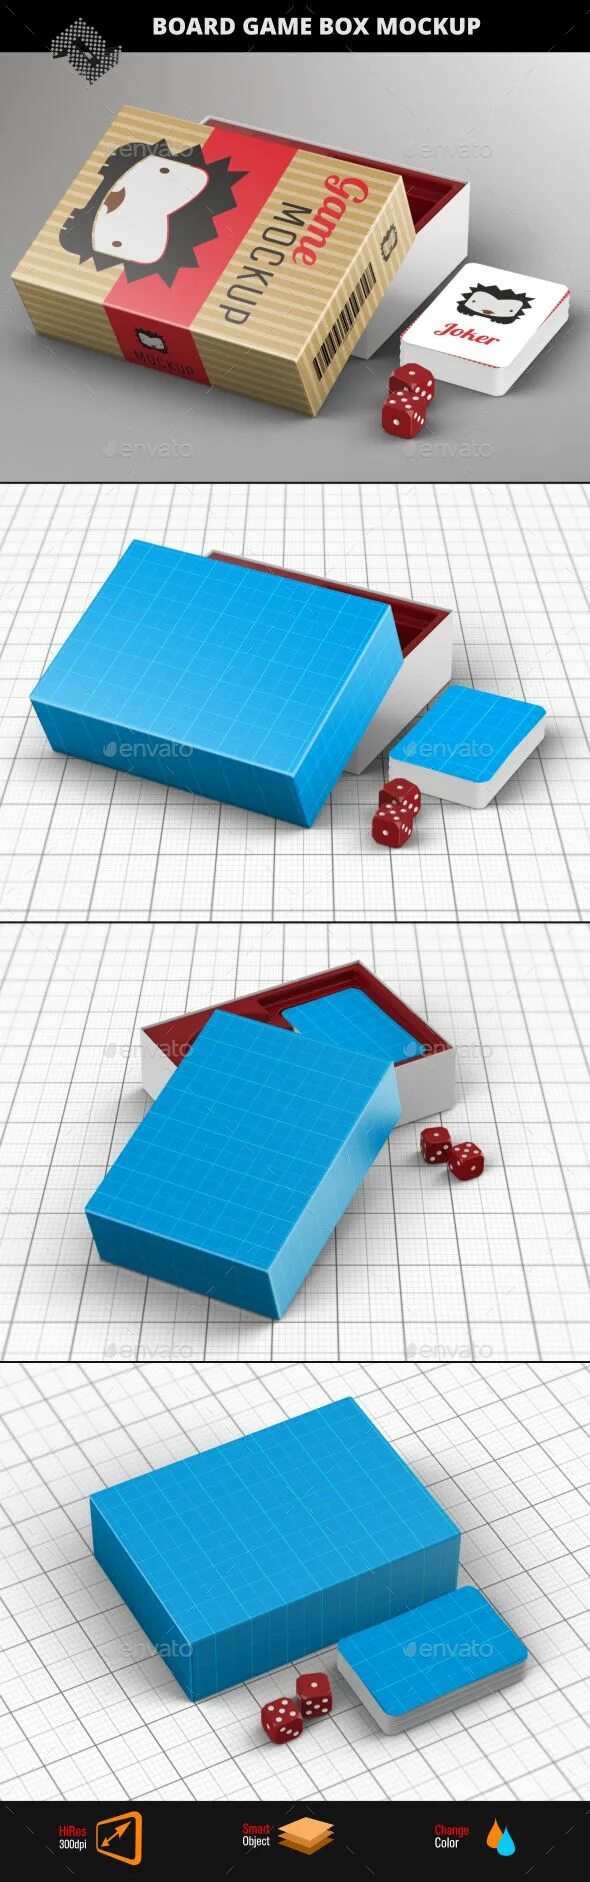 Мокап настольной игры. Мокап упаковка для настольной игры. Коробка для игрушек мокап. Настольная игра коробка. Object box